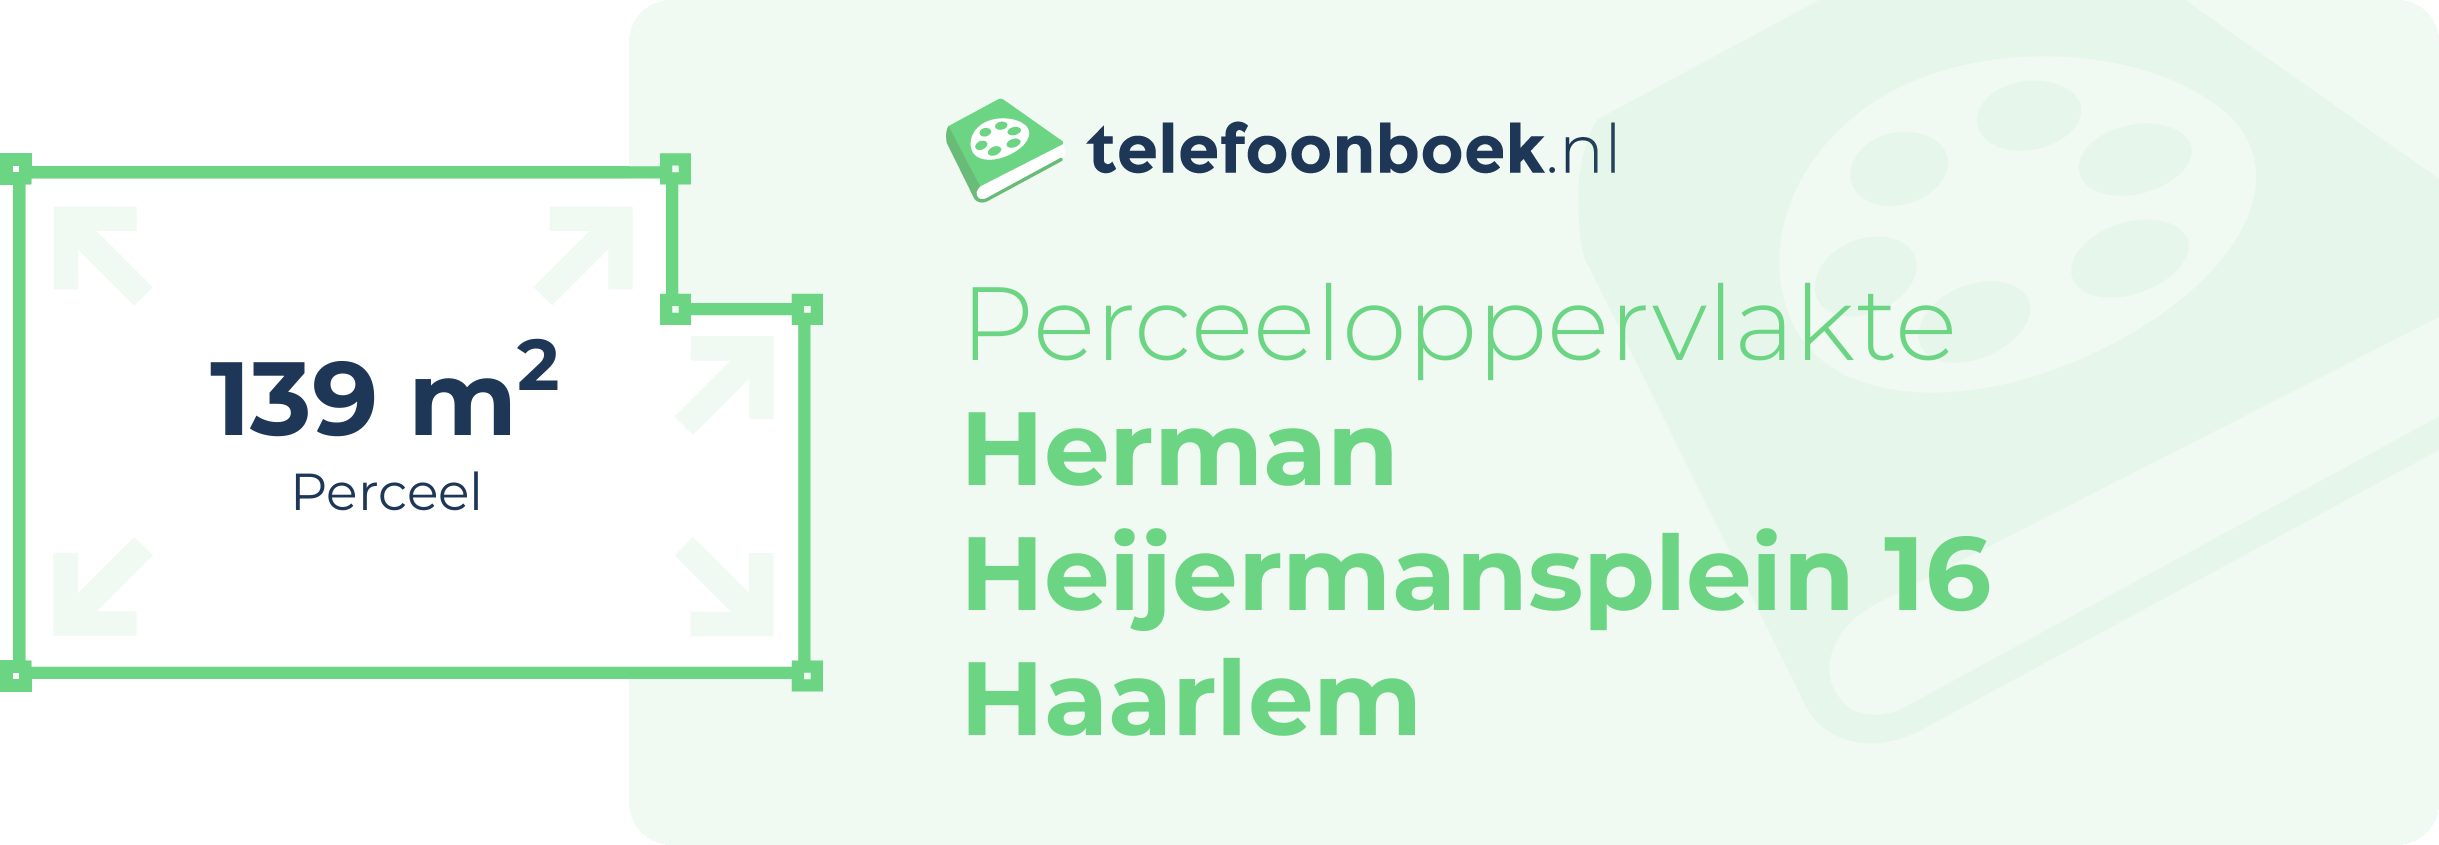 Perceeloppervlakte Herman Heijermansplein 16 Haarlem